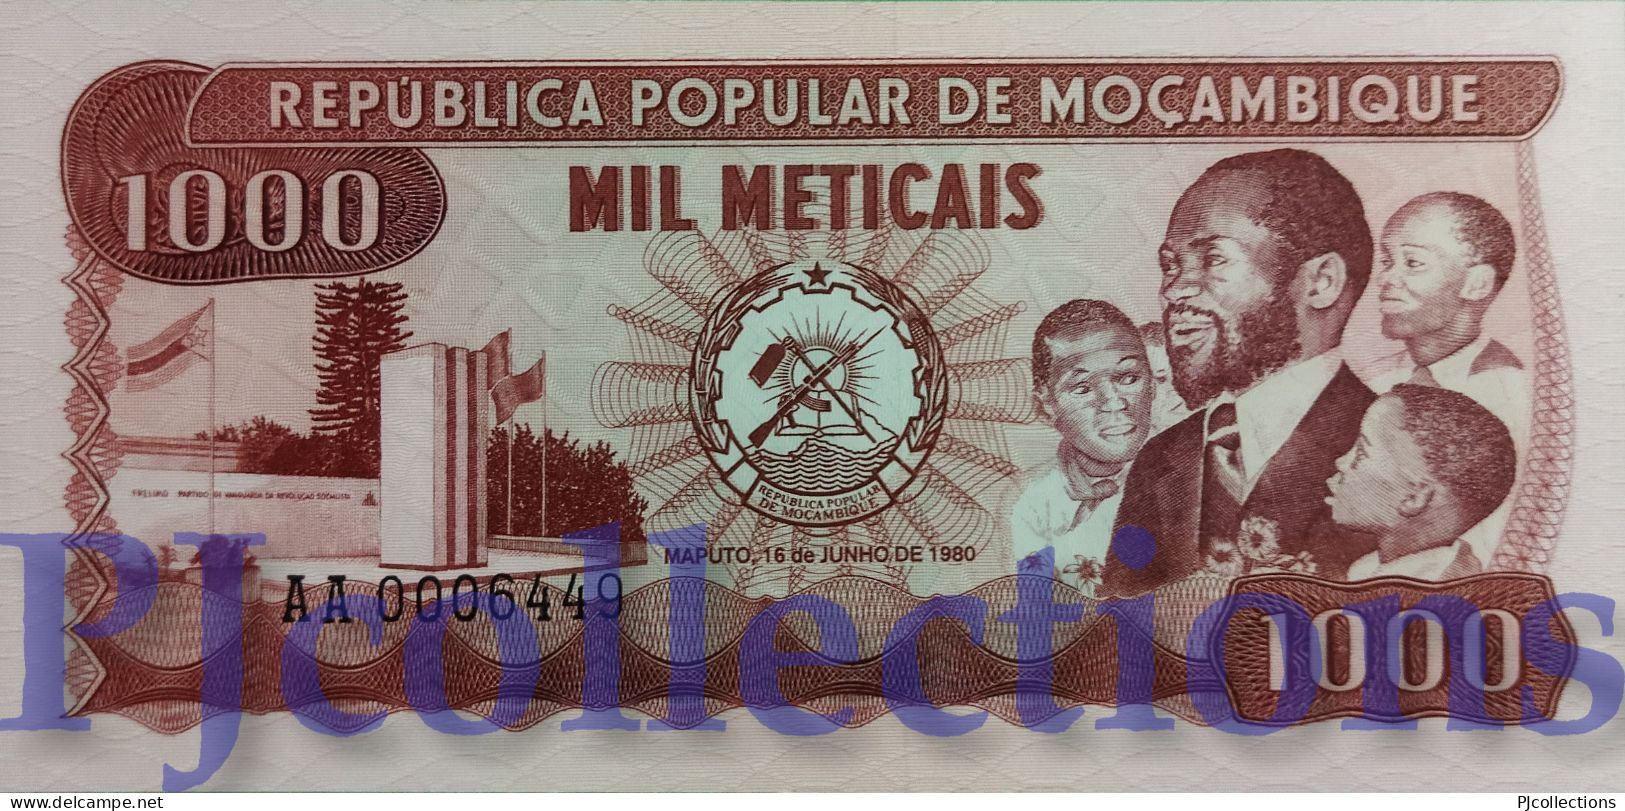 MOZAMBIQUE 1000 METICAIS 1980 PICK 128 UNC LOW SERIAL NUMBER "AA0006449" - Moçambique